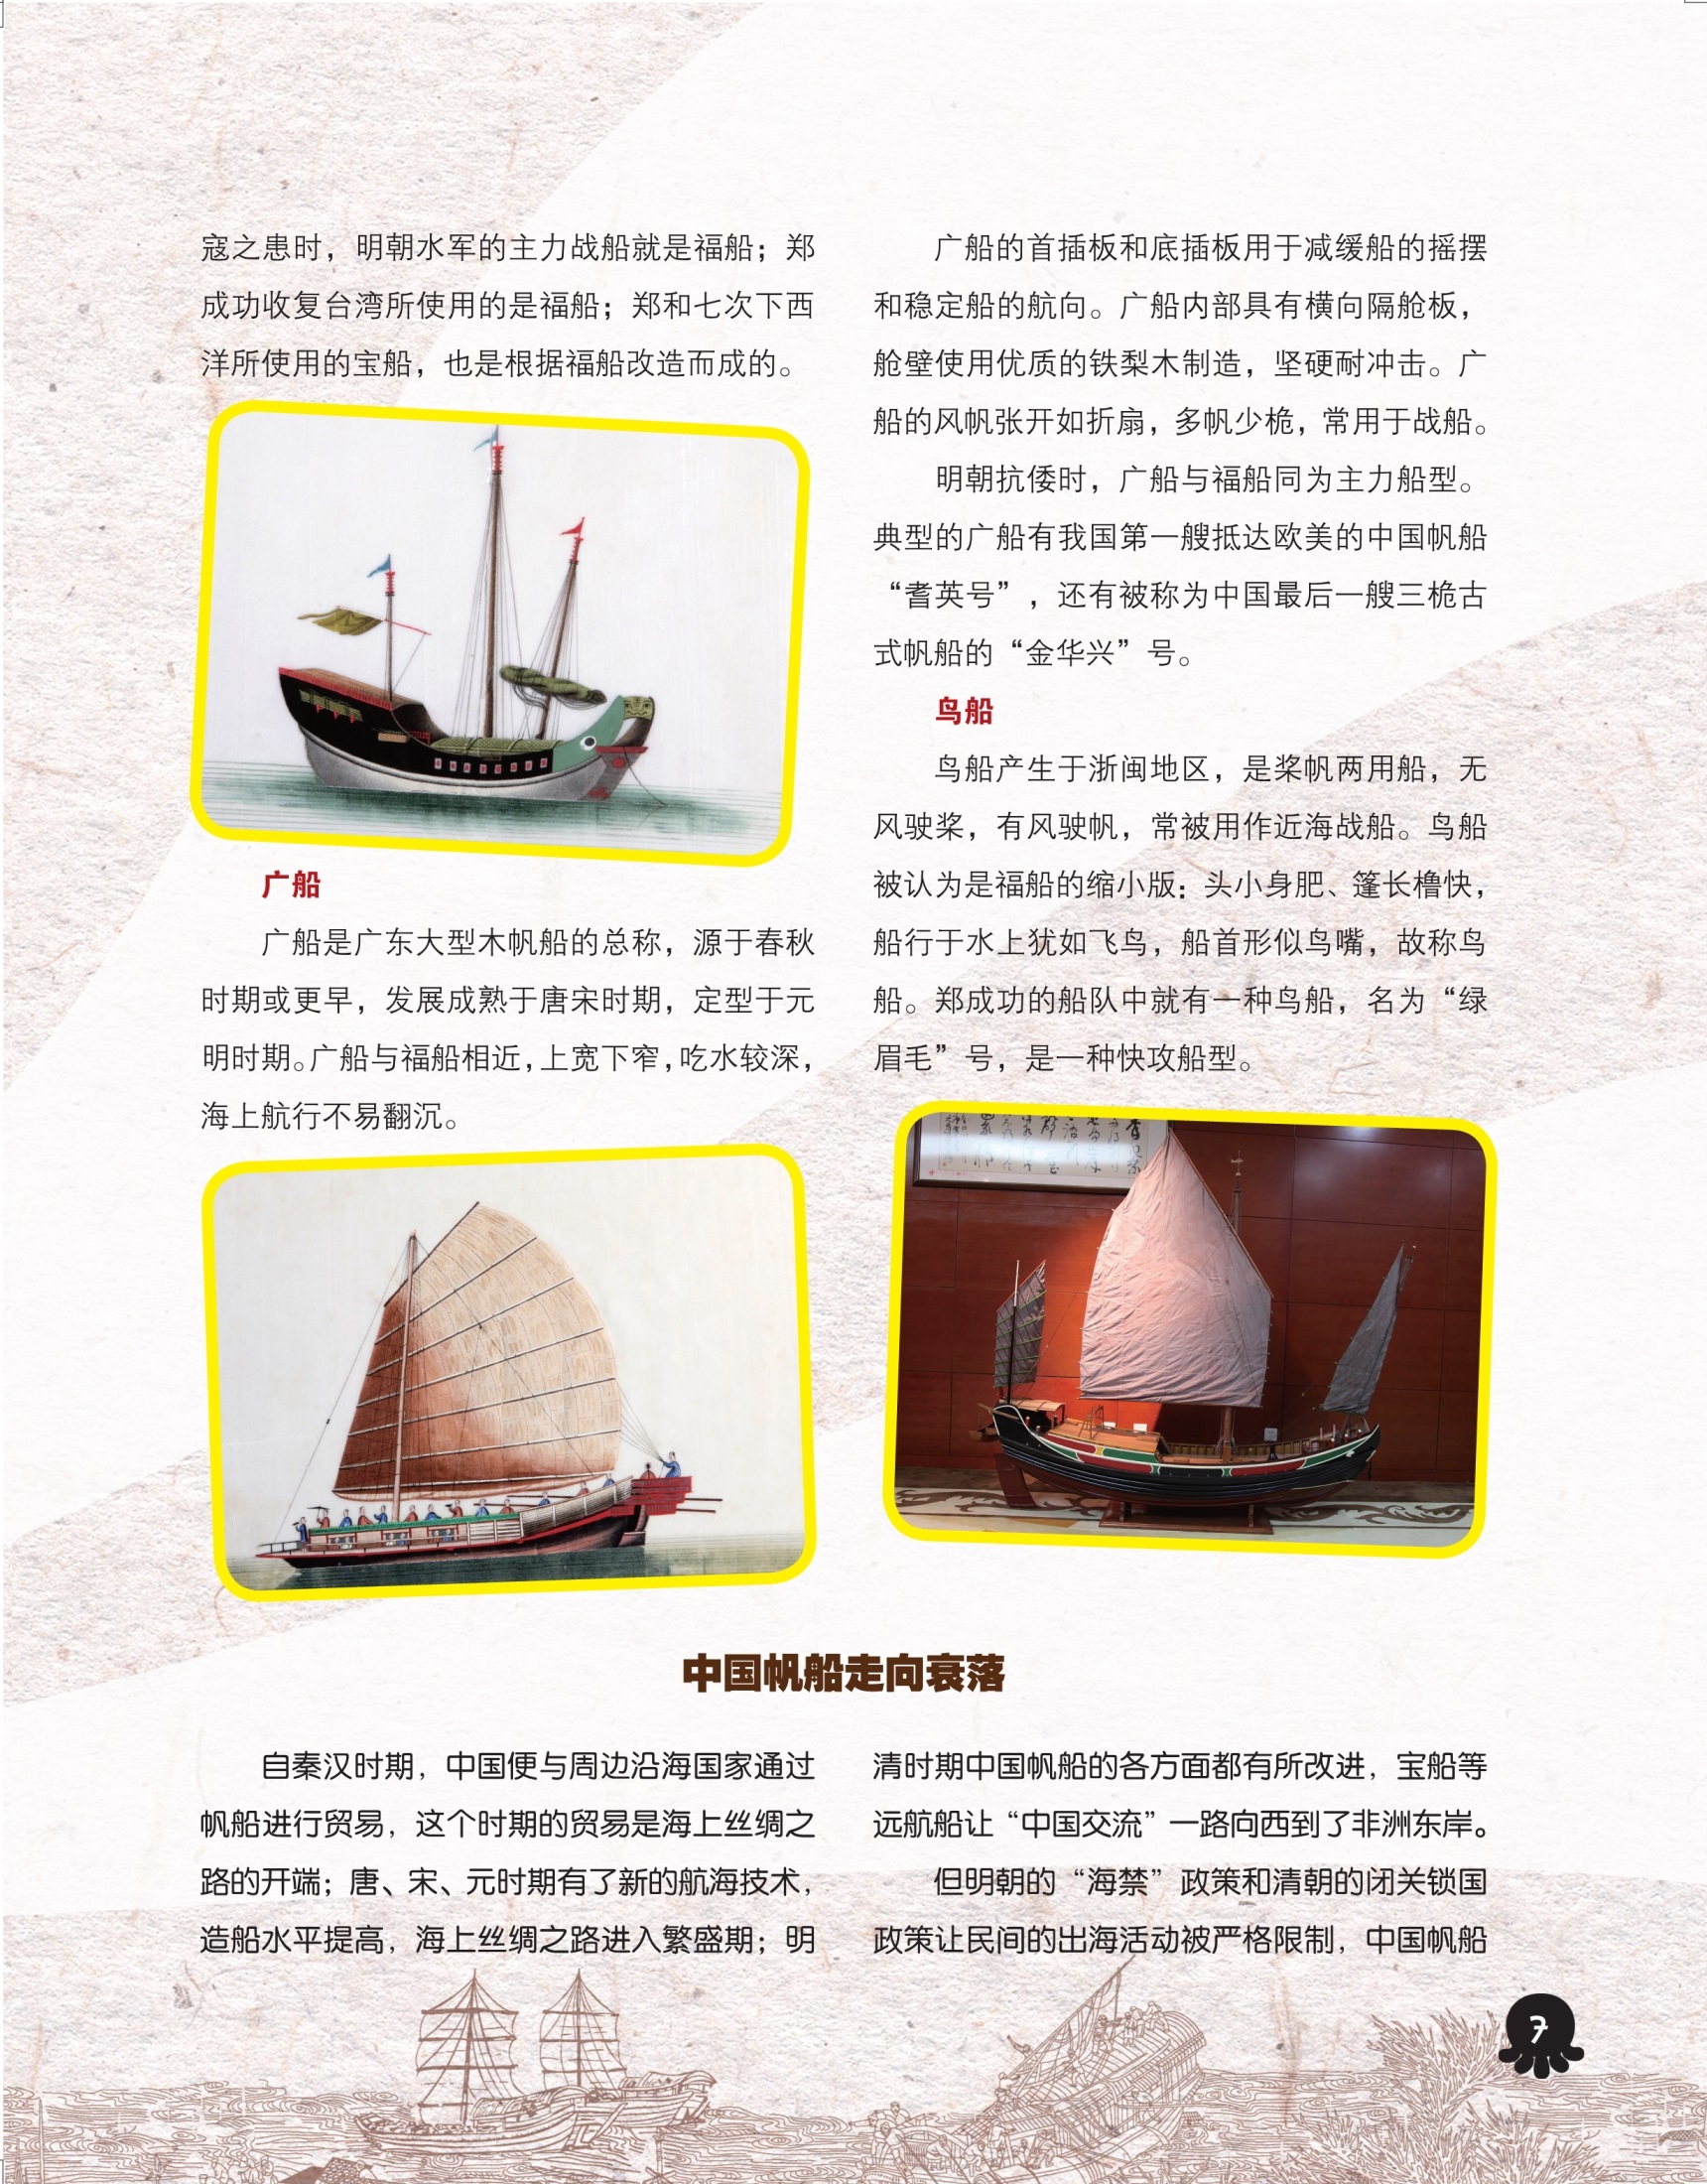 明朝水军的主力战船就是福船,中国帆船走向衰落